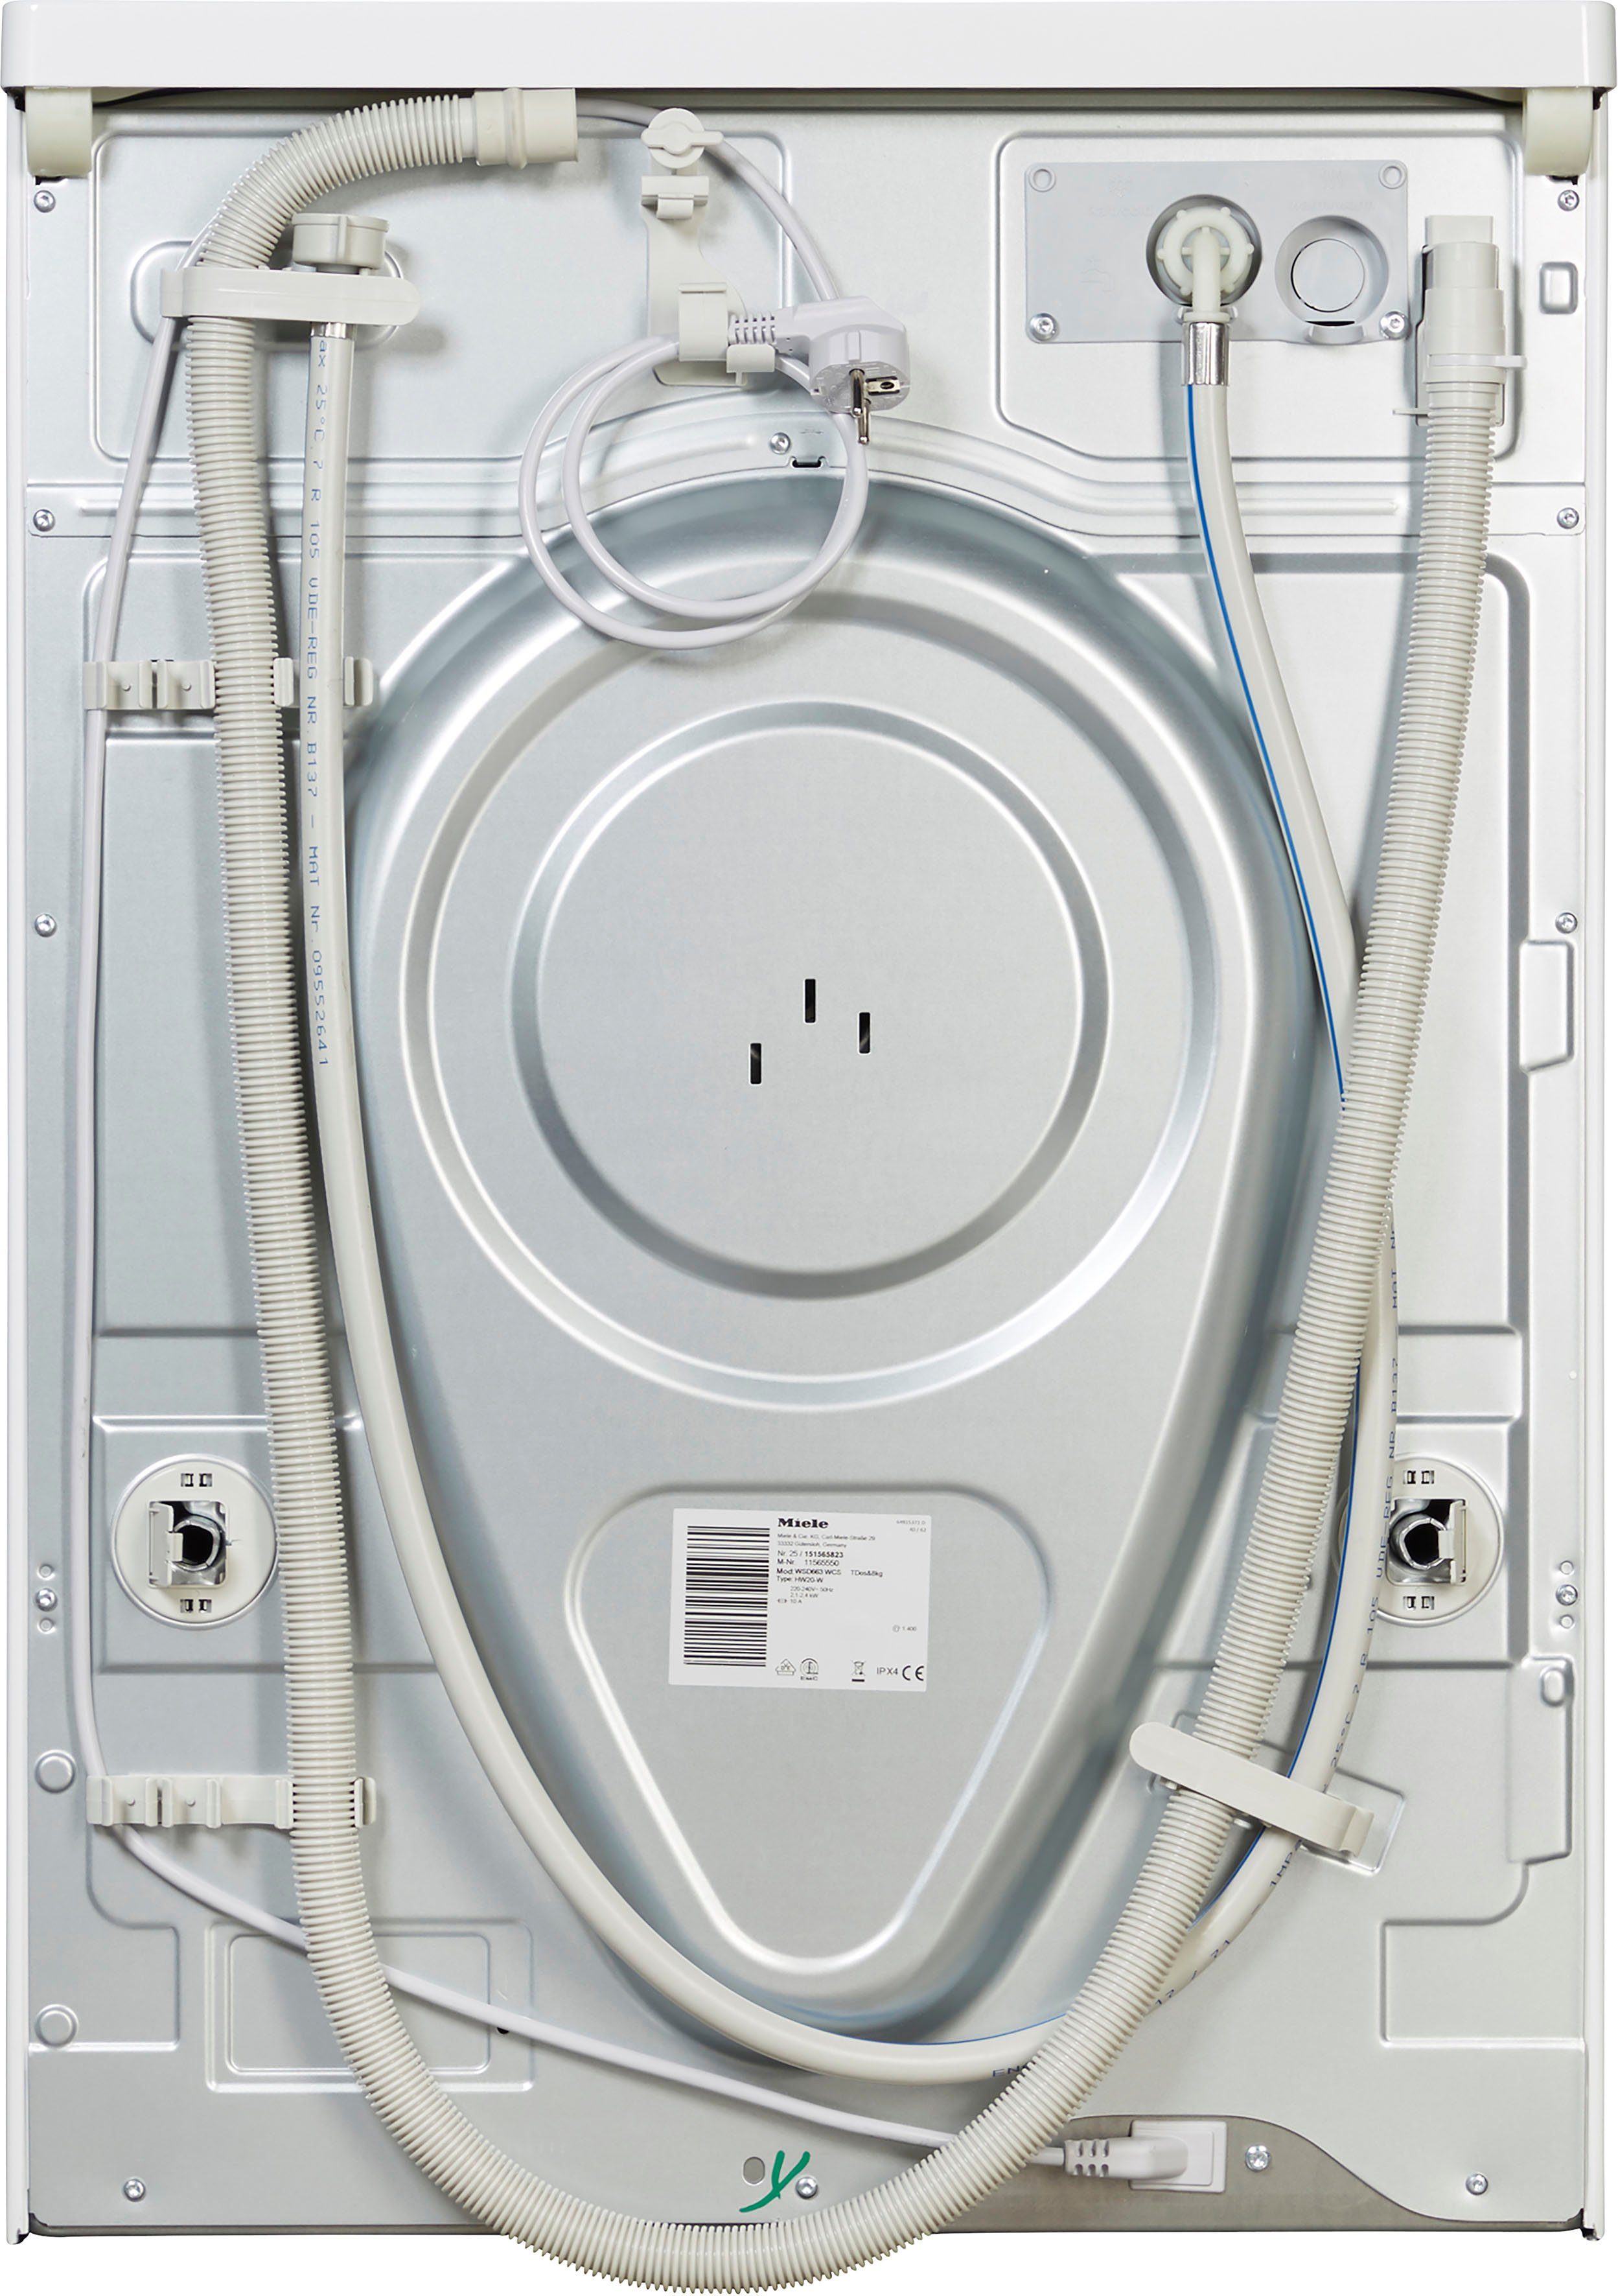 Waschmitteldosierung TDos&8kg, zur Miele WSD663 ModernLife automatischen Waschmaschine U/min, 1400 WCS TwinDos kg, 8